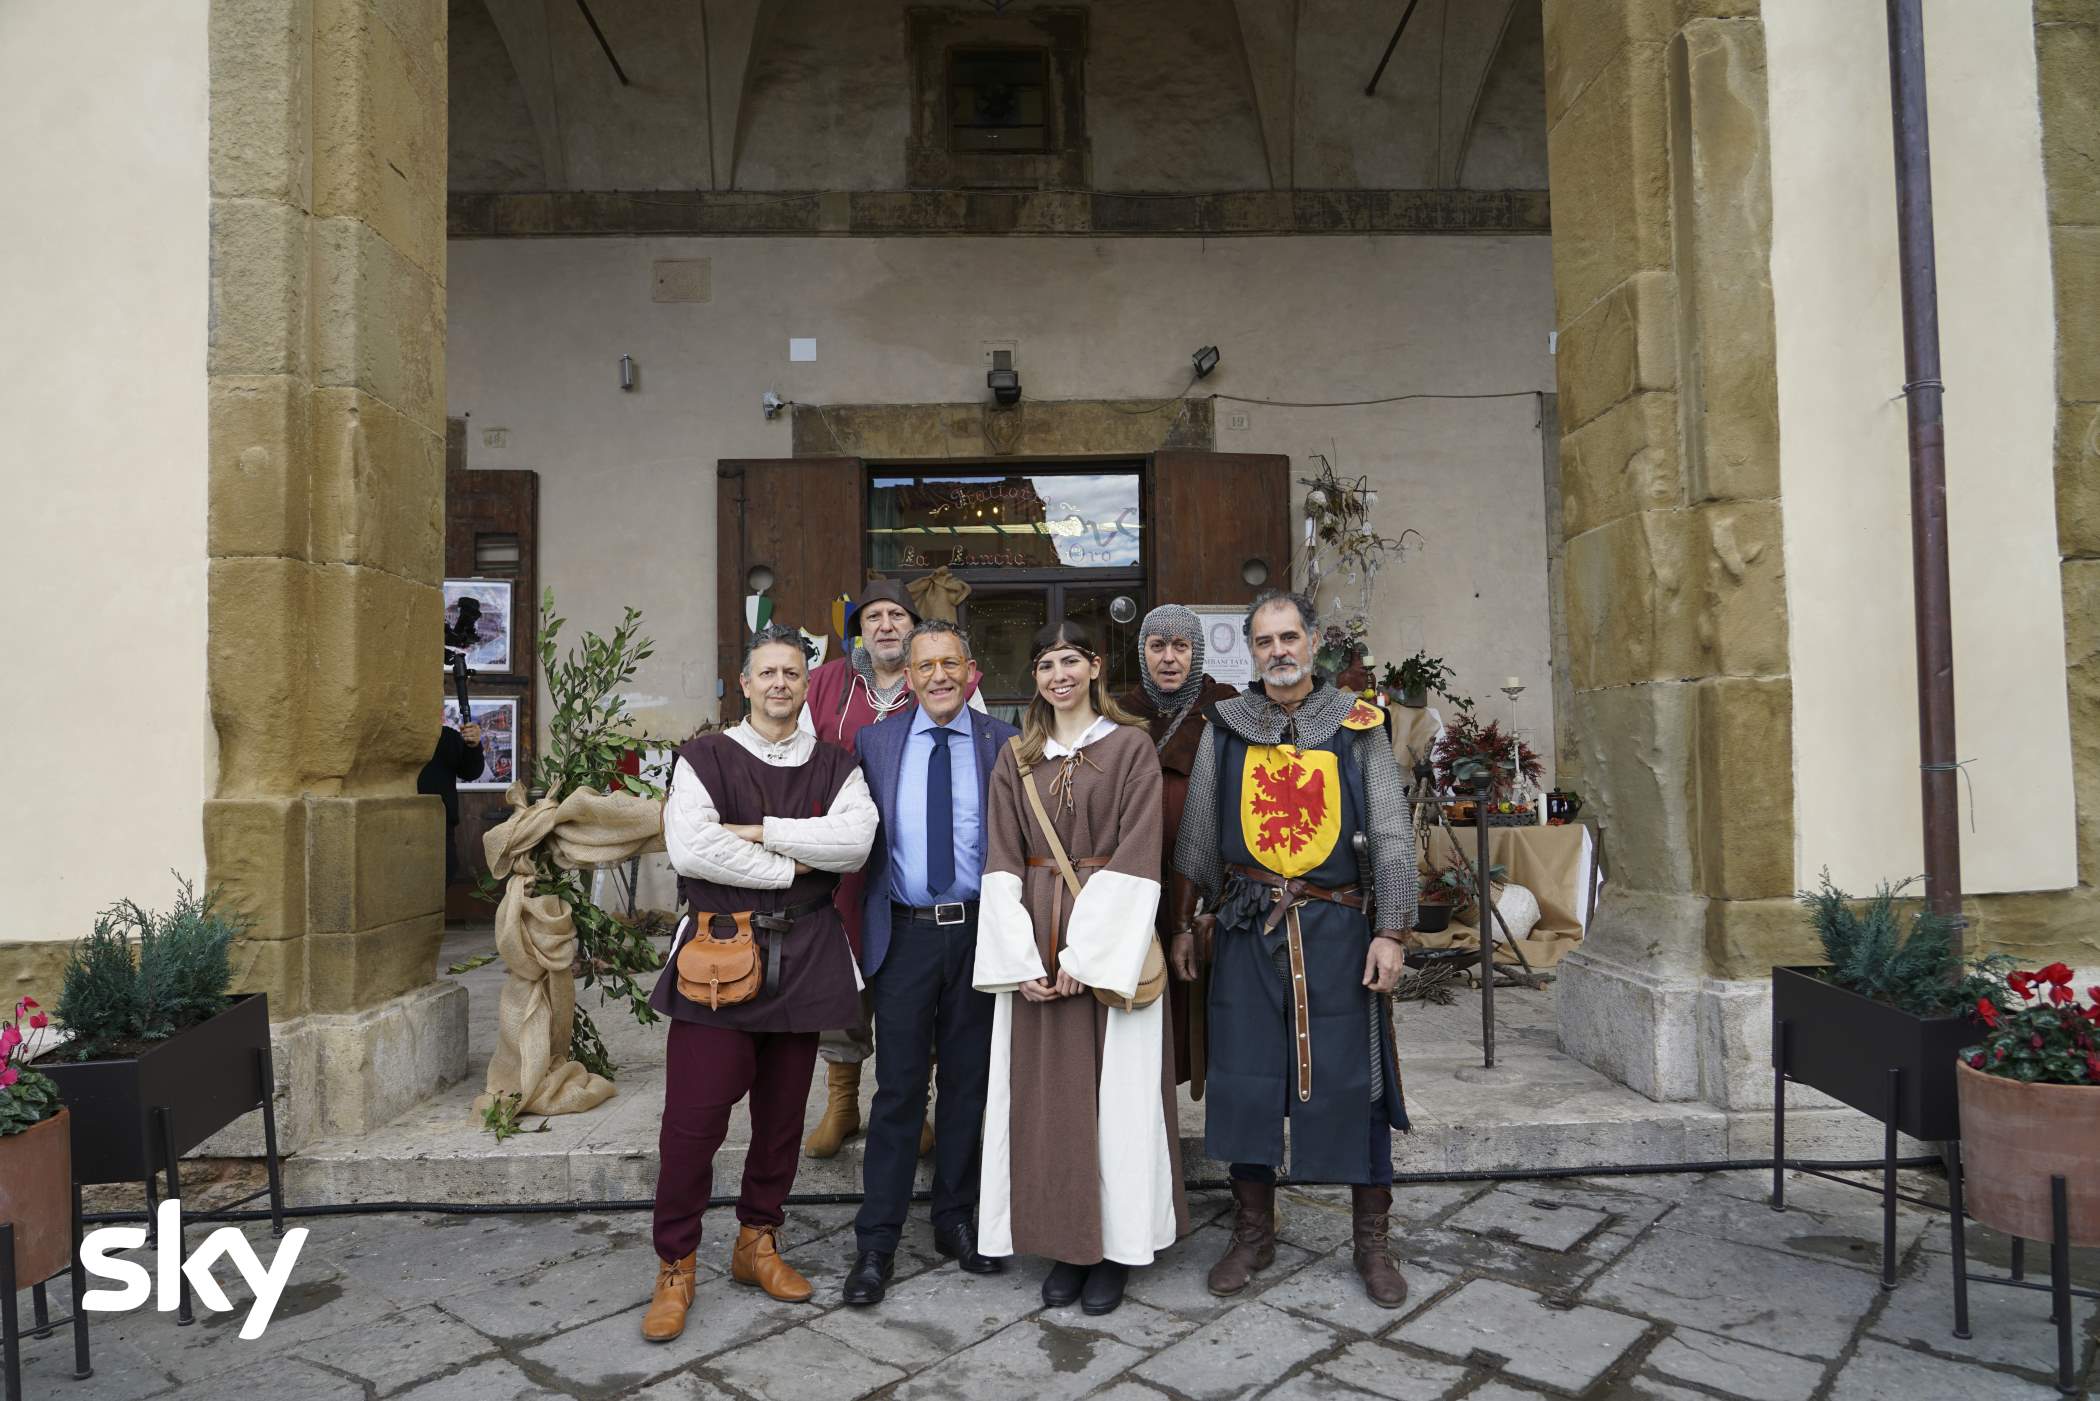 Alessandro Borghese 4 Ristoranti 6 - Quinta Puntata ad Arezzo [credit: Sky]